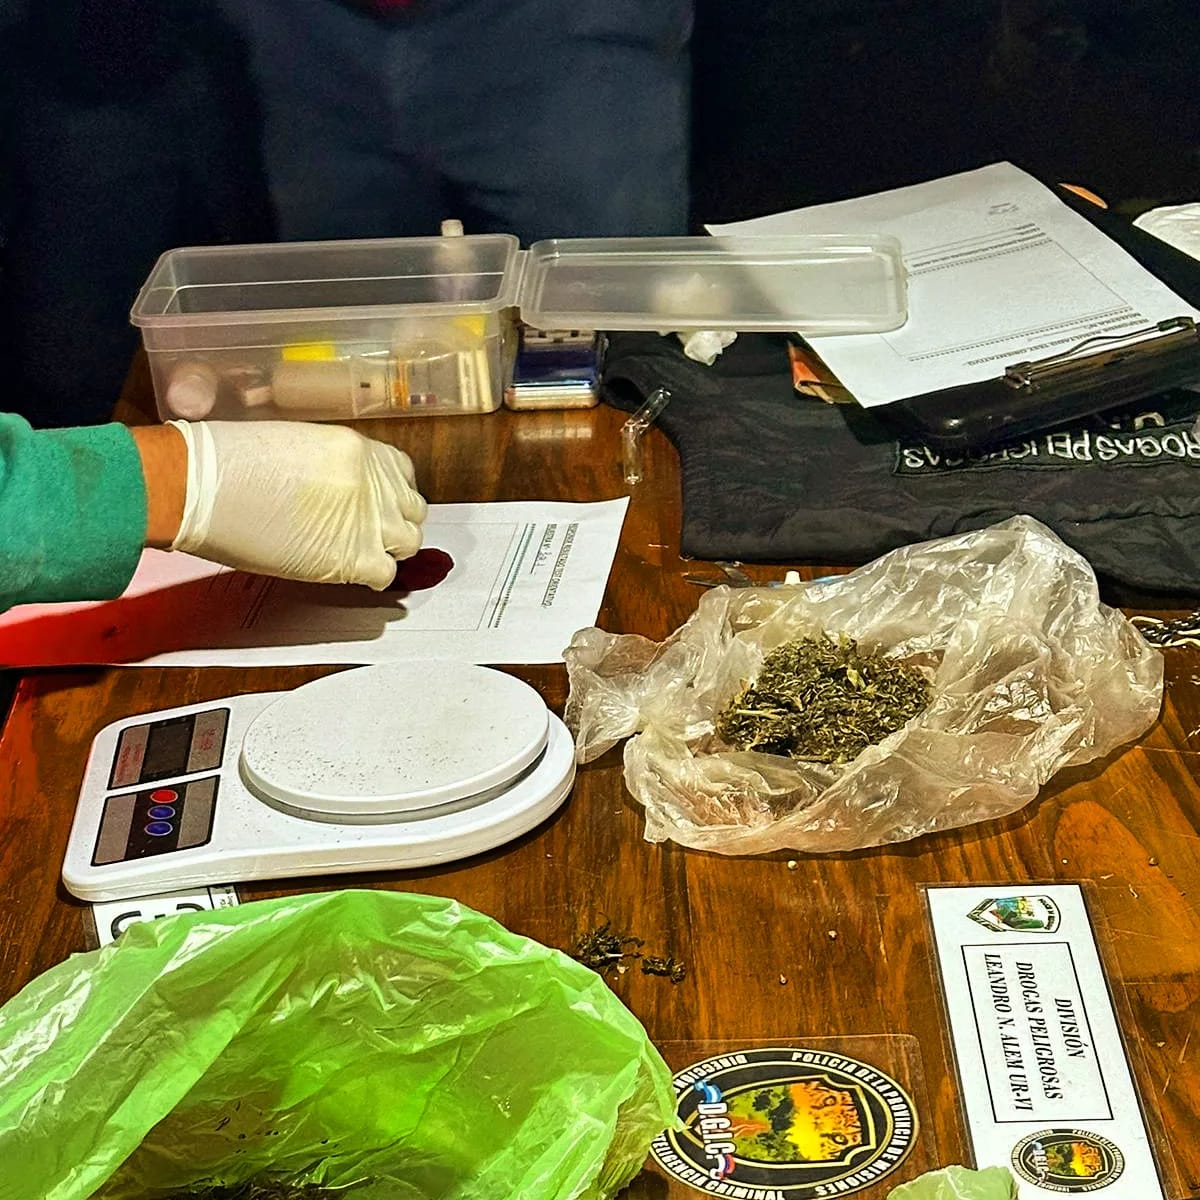 Desbarataron un "narcokiosco" en San Javier y ya son 50 los puntos de venta de drogas desarticulados por la Policía imagen-60